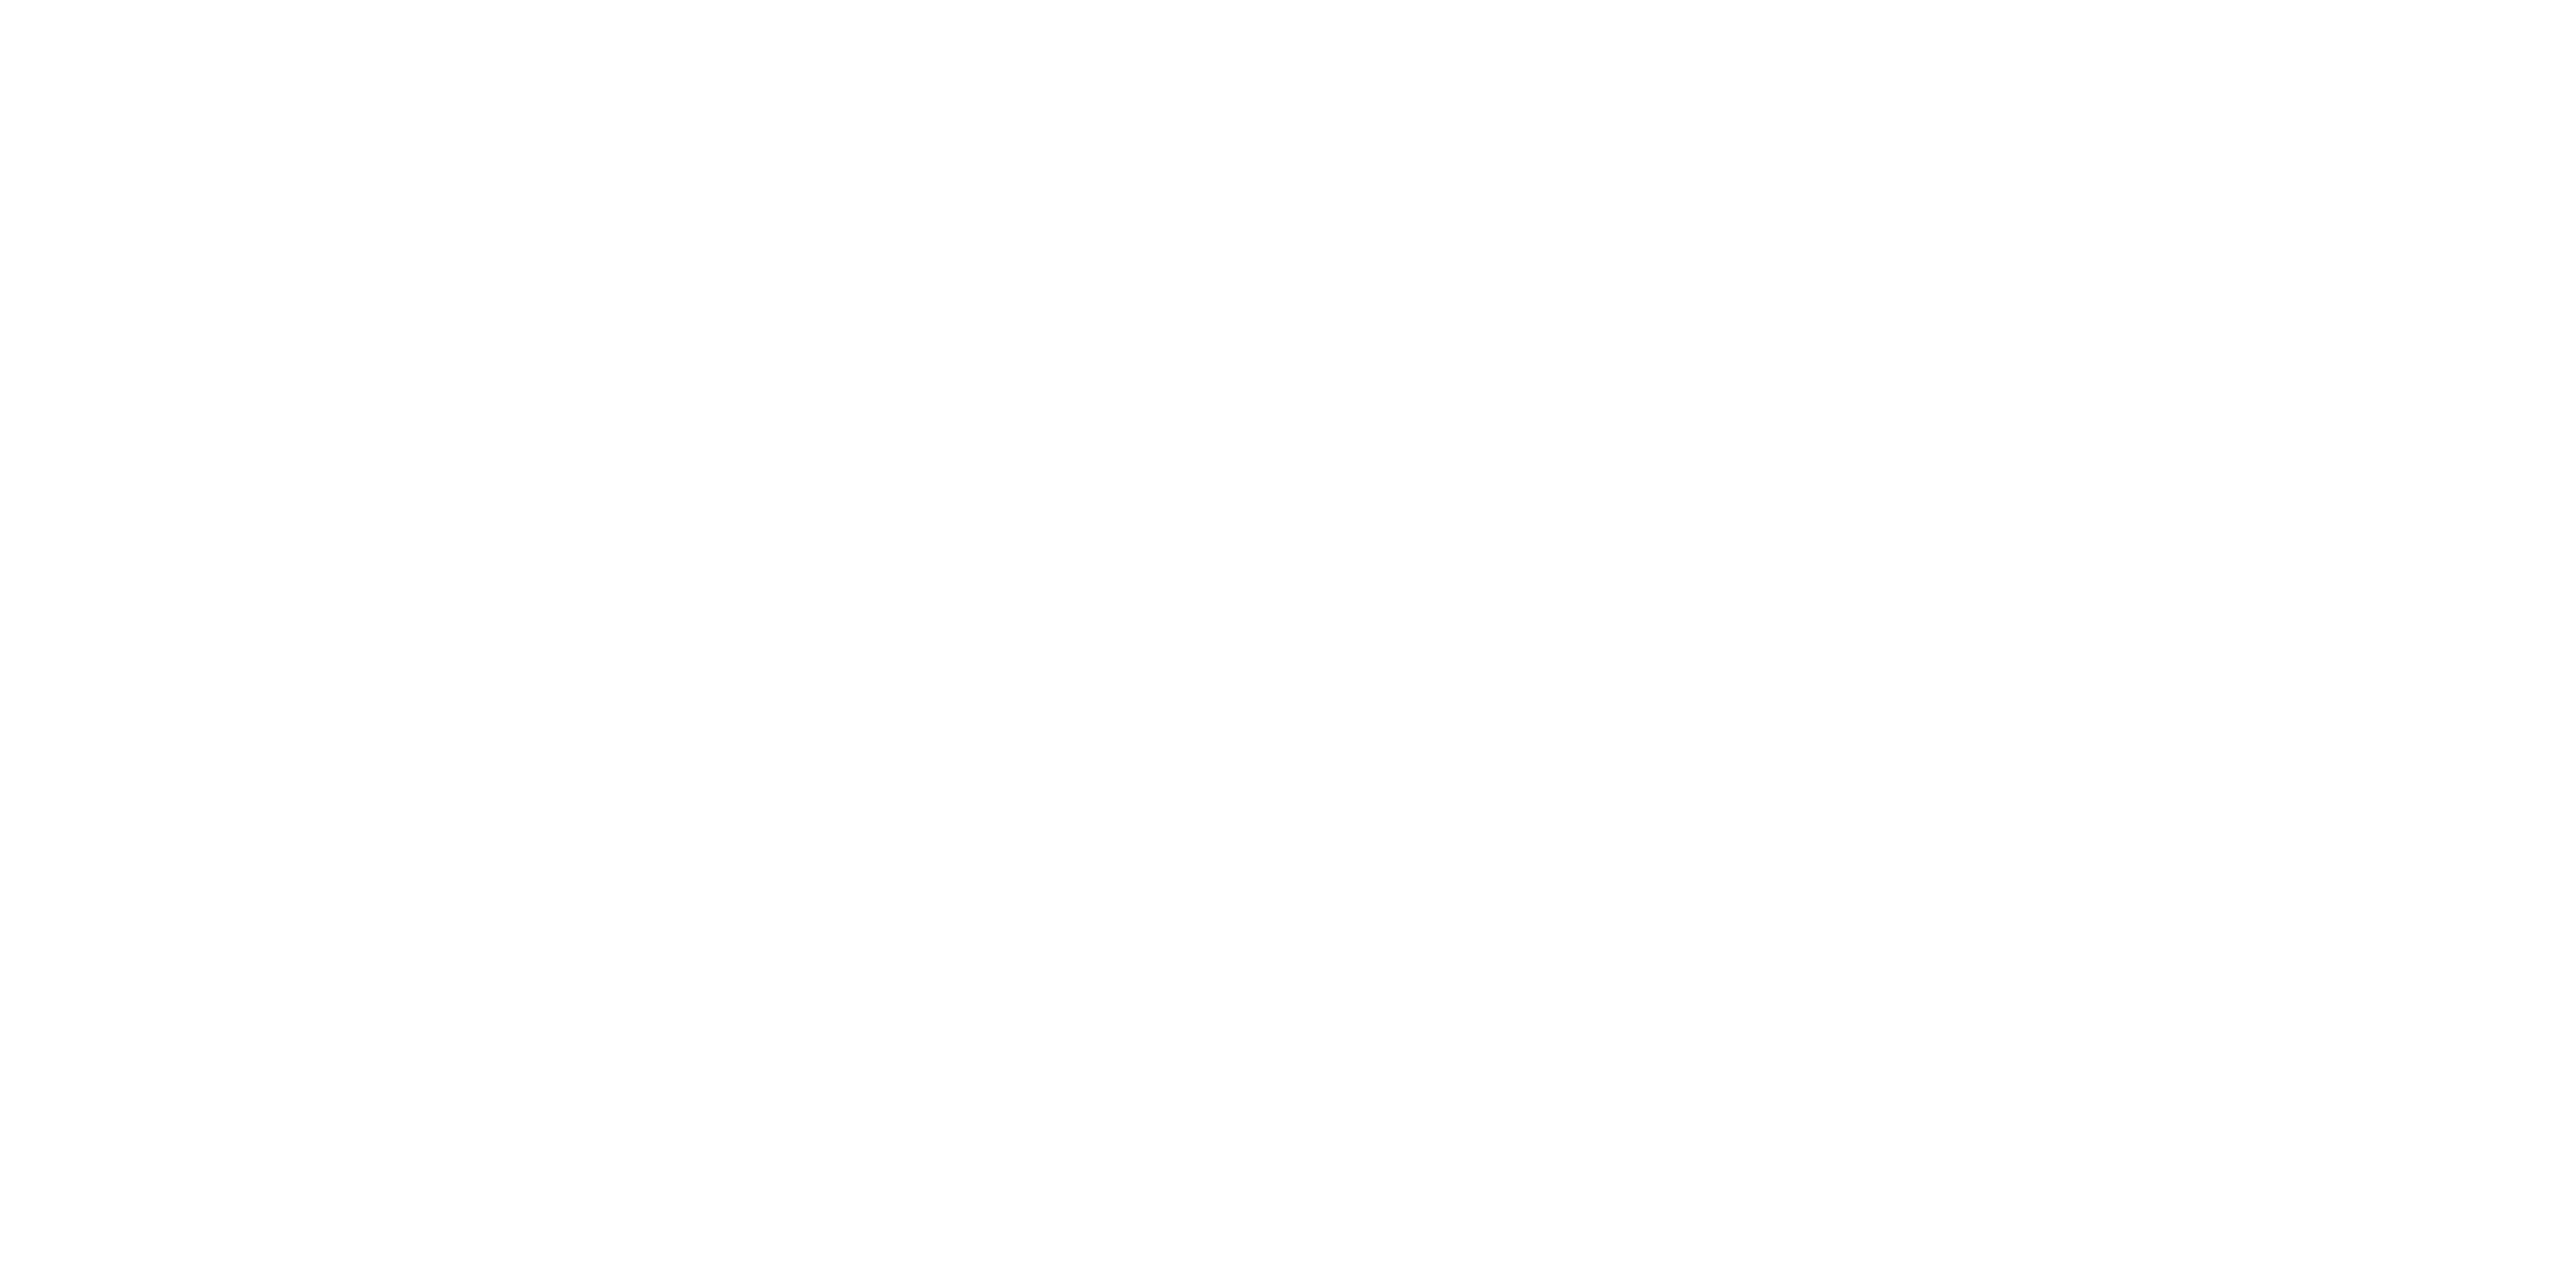 Allocco Design Logo White